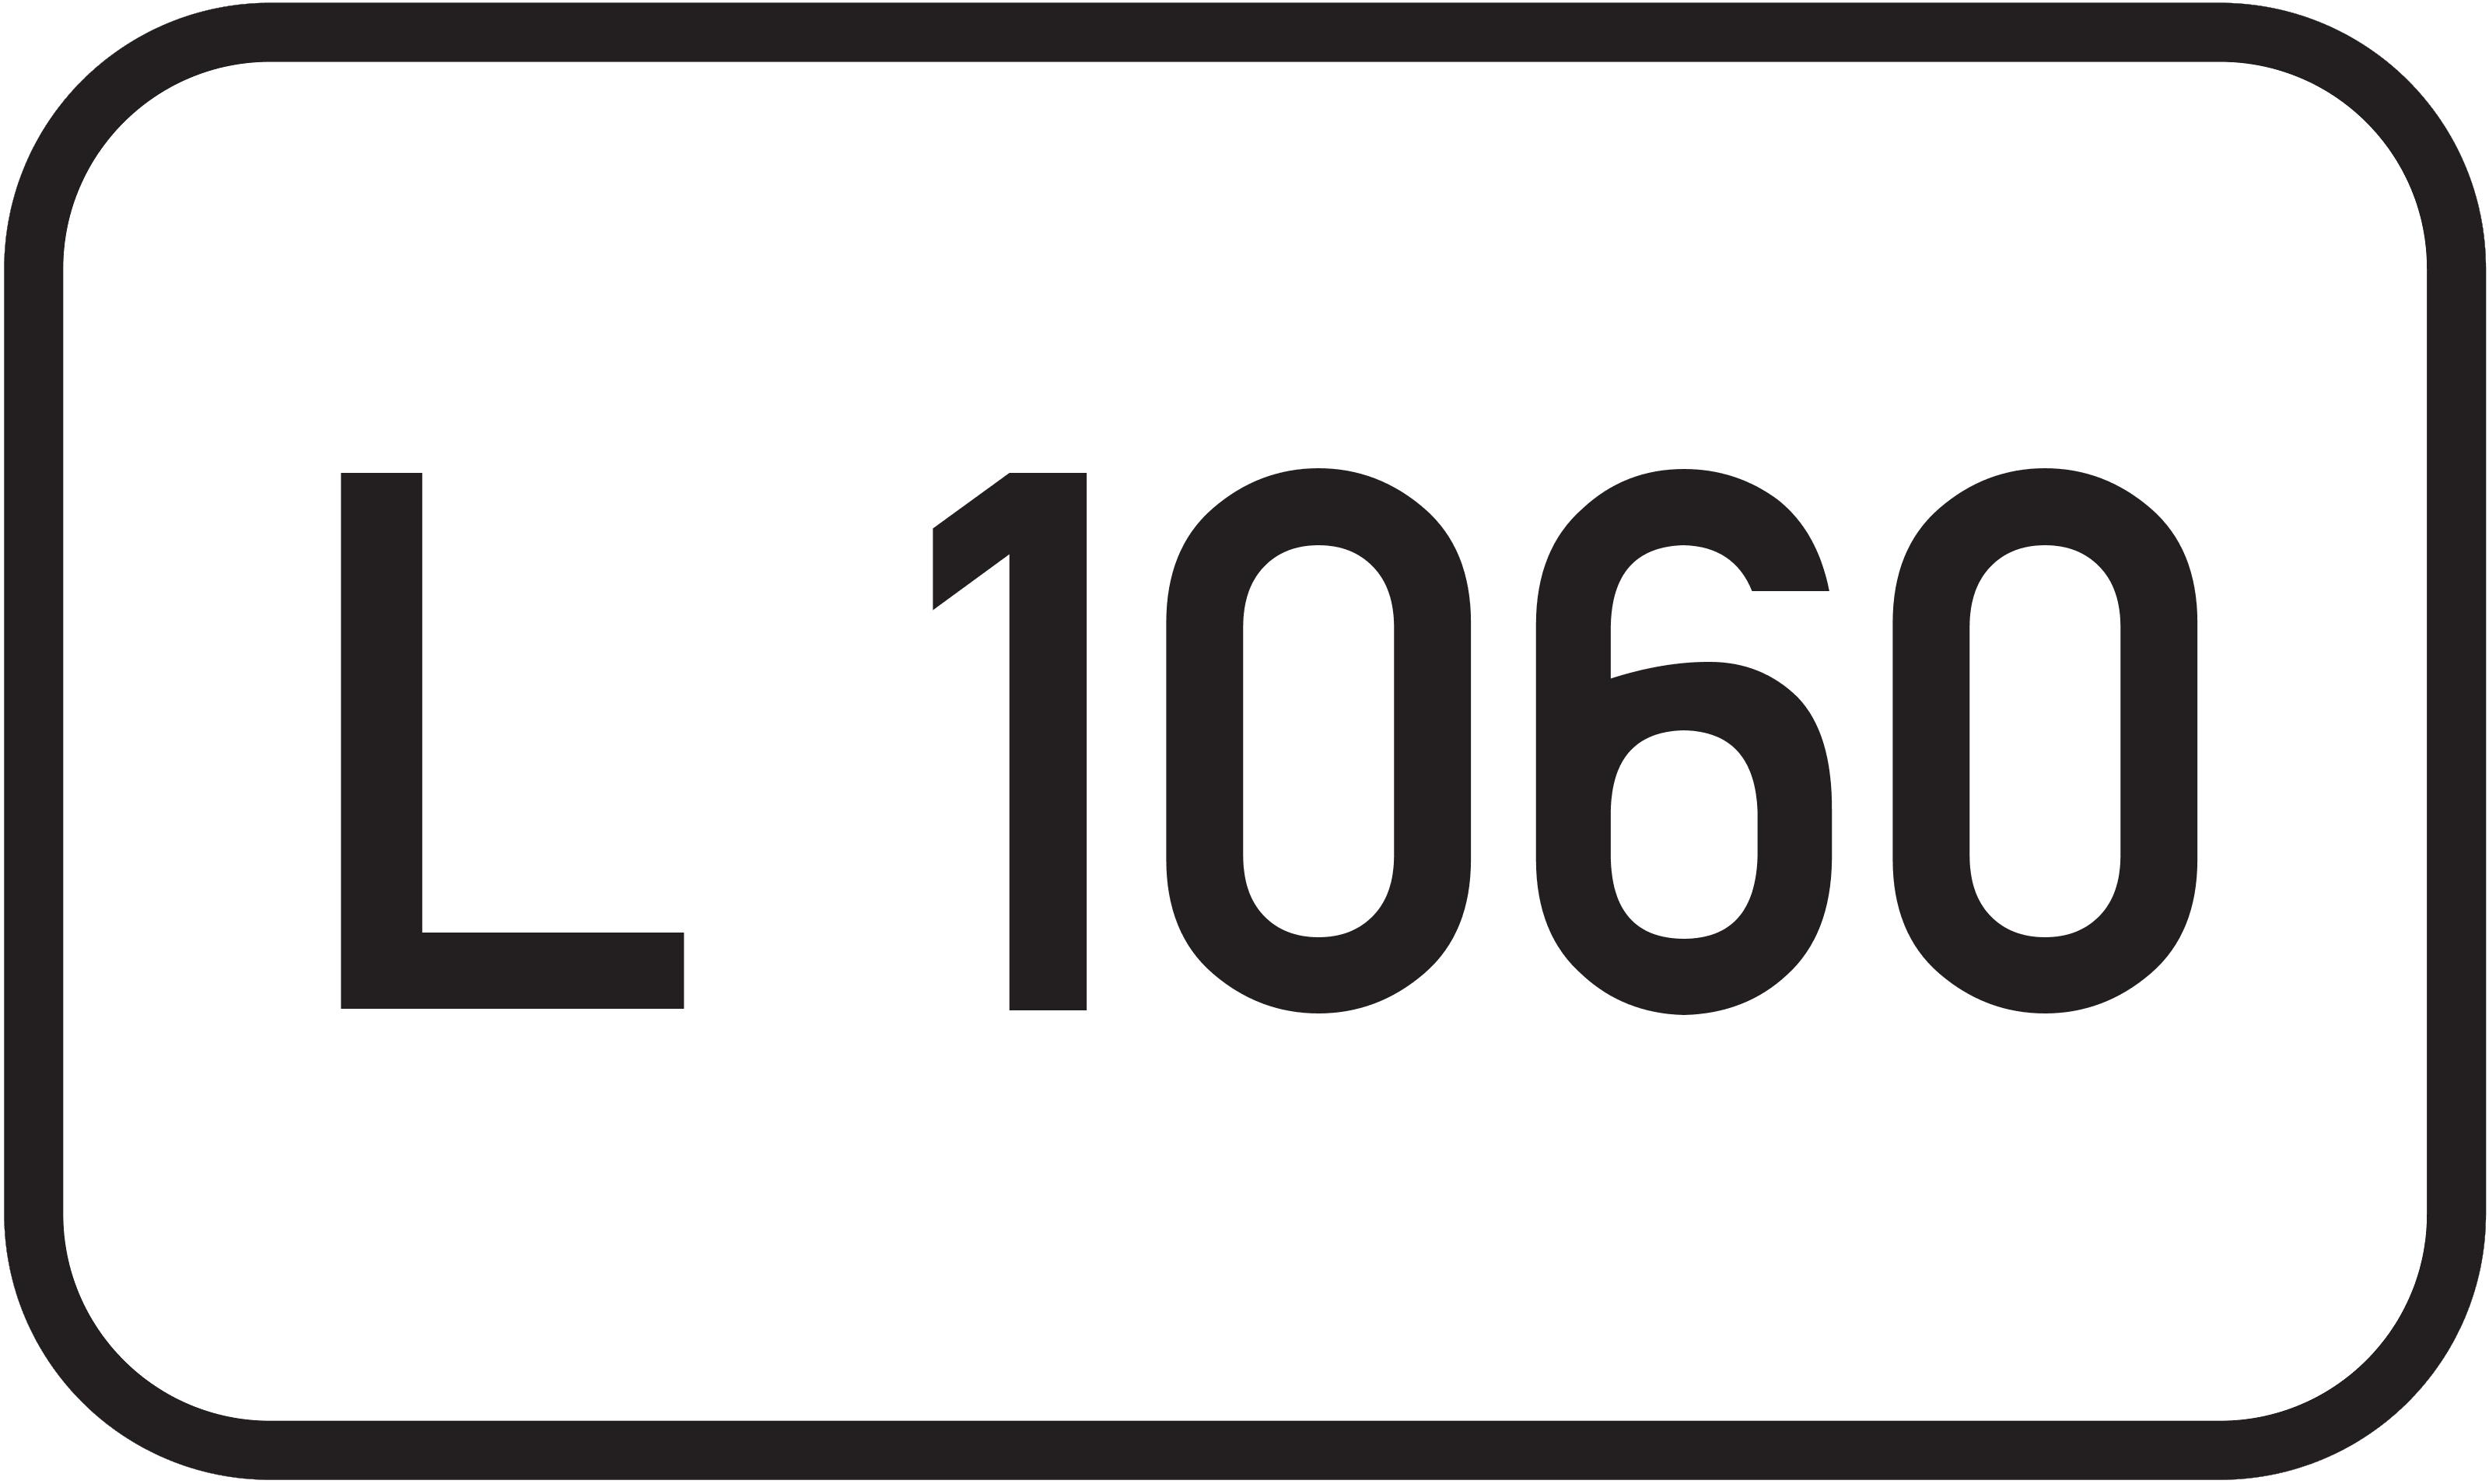 Landesstraße L 1060